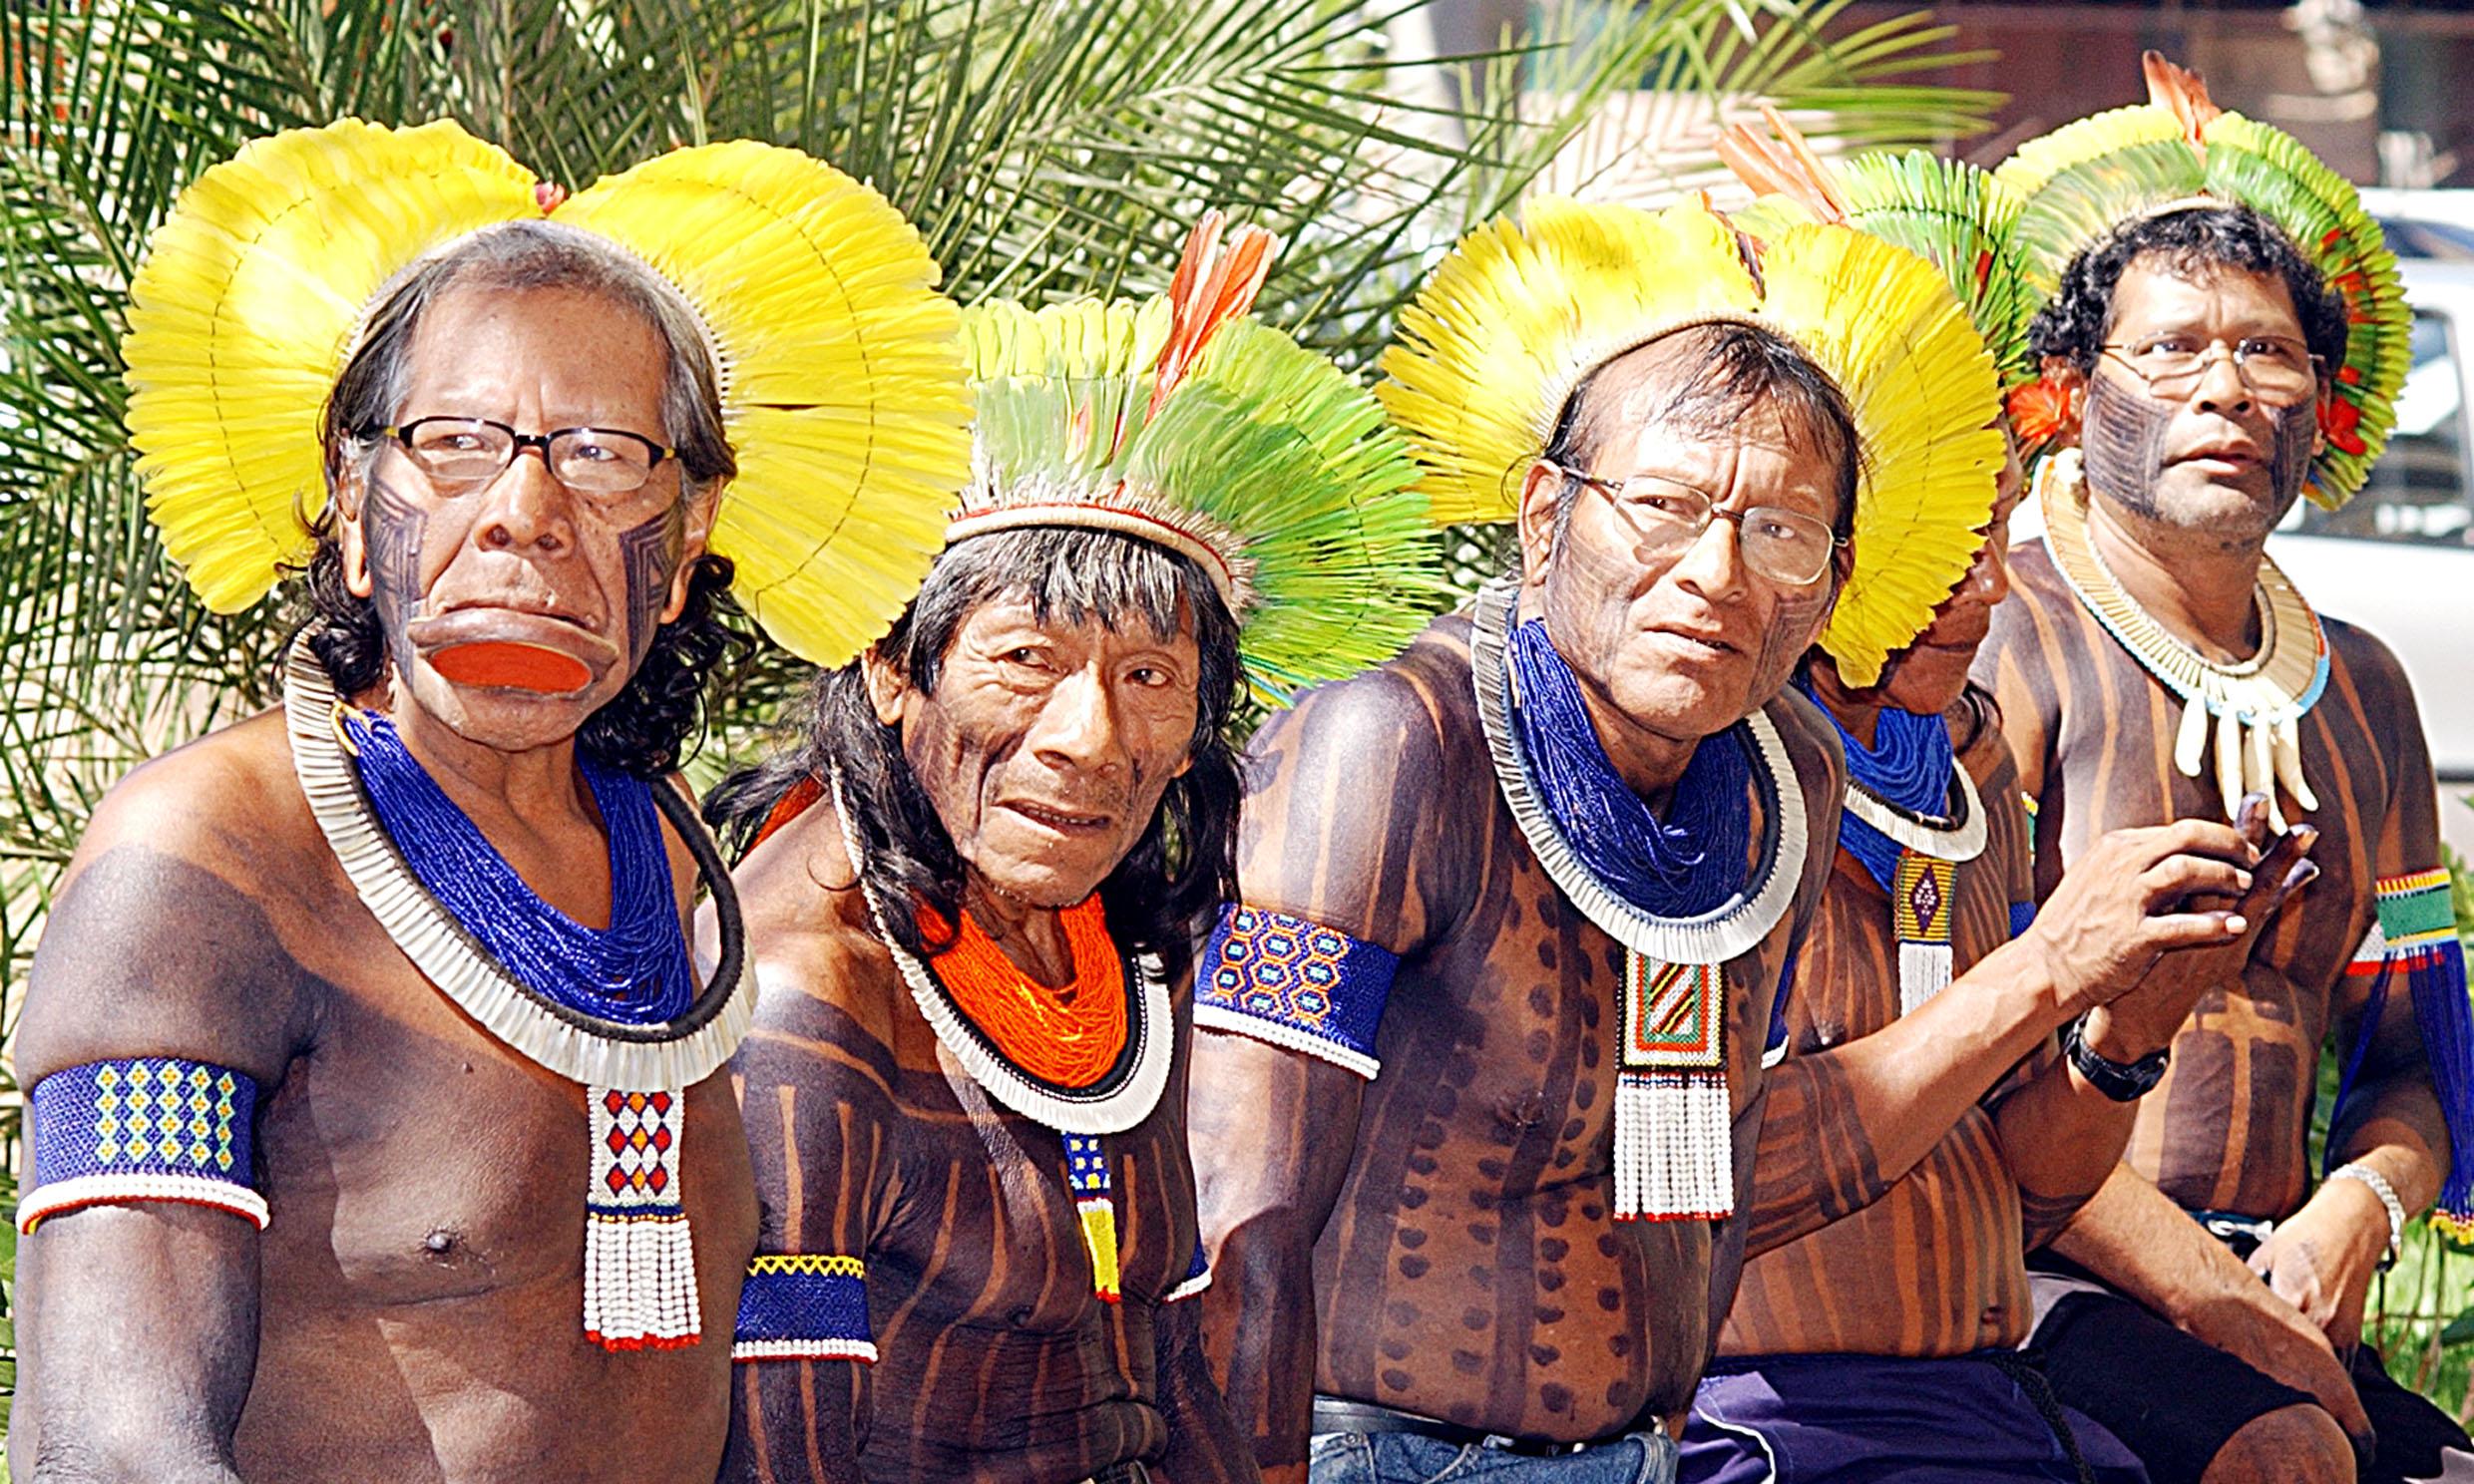 Kaiapos tribe